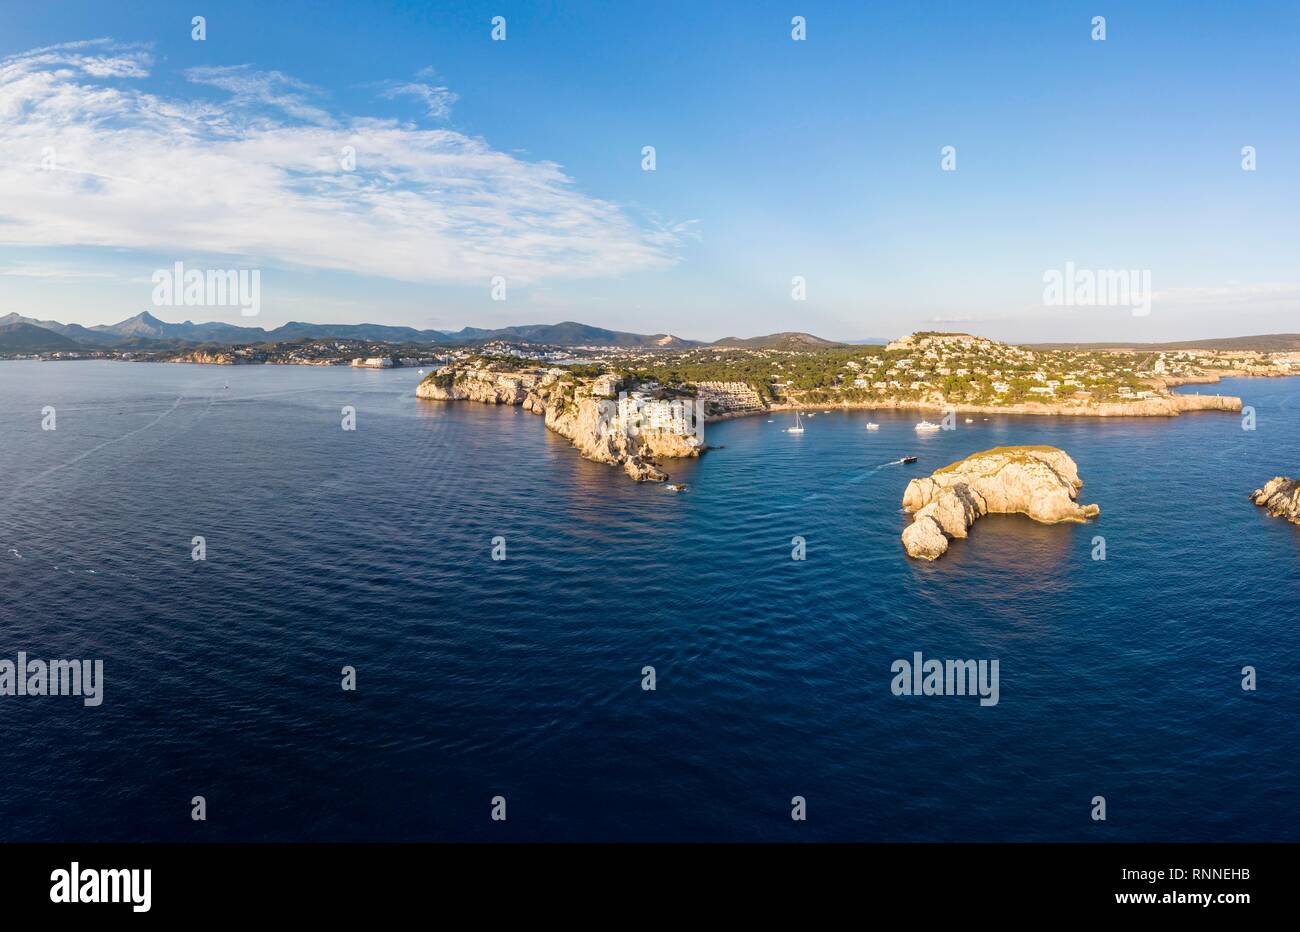 Vista aérea, Islas Malgrat, Islas Malgrats, Bahía de Santa Ponca, Región de Calvia, Mallorca, Islas Baleares, España Foto de stock